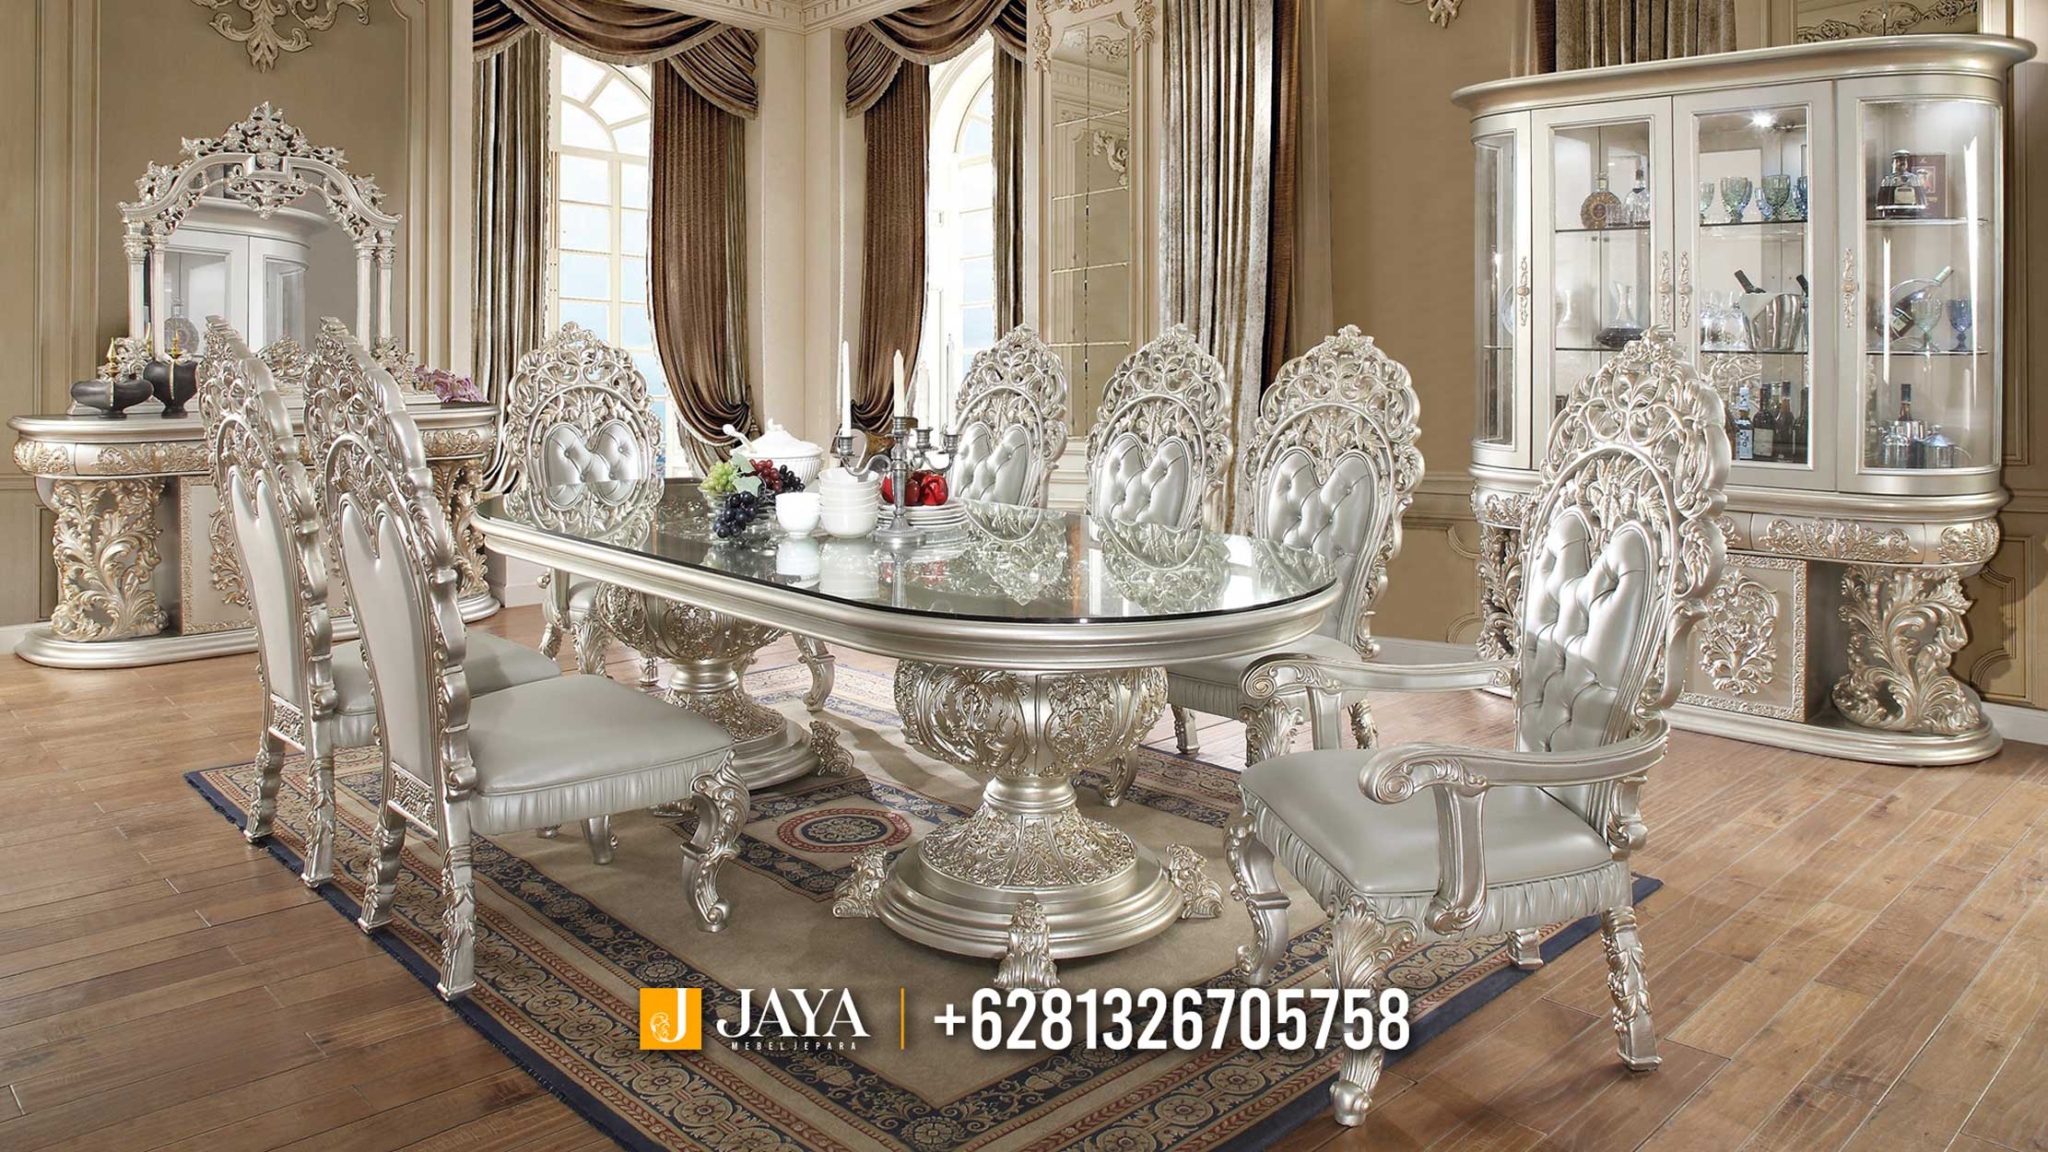 Beautiful Piralys Meja Makan Mewah Jepara Terbaru Carving Luxury JM364